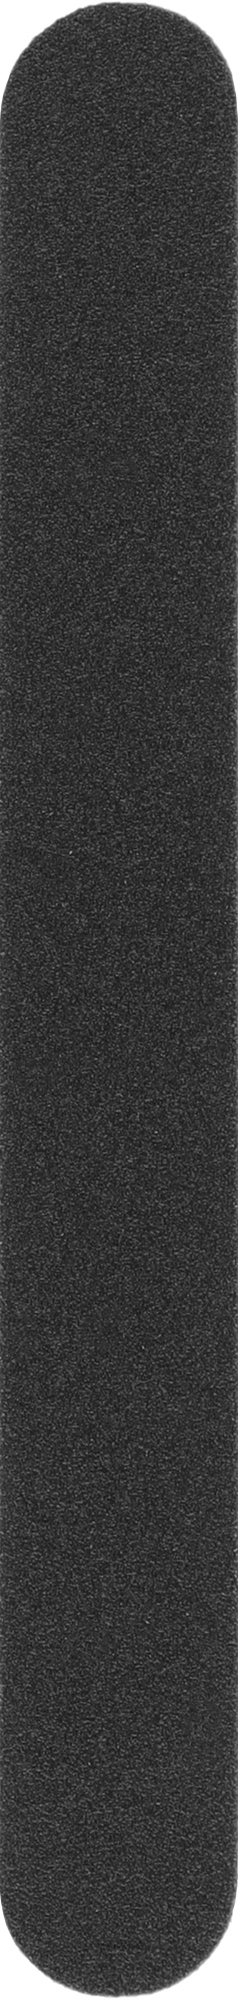 Змінні файли для пилки без м'якого шару, рівні, 135 мм, 180 грит, чорні - ThePilochki — фото 50шт